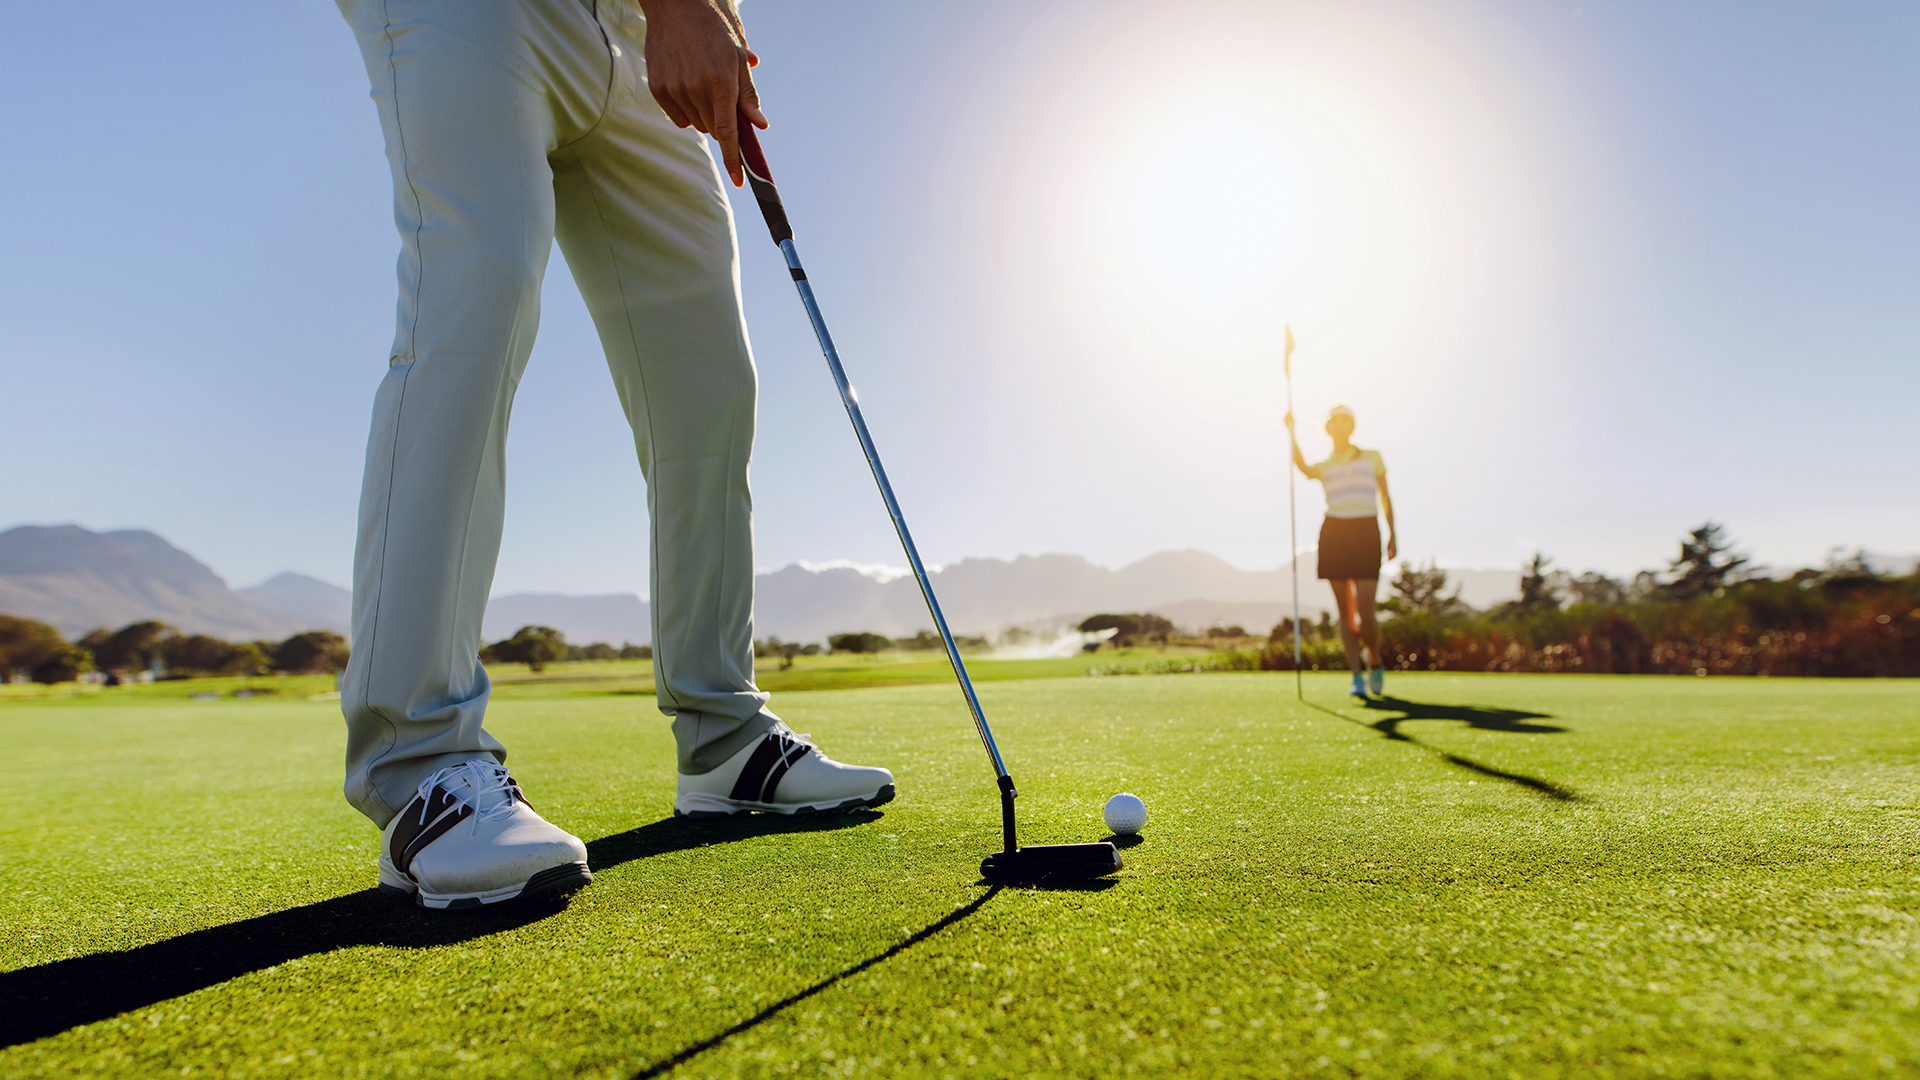 Golfers-Putt-Golf-Ball-on-Green-Course-Auburn-Turfgrass-Management-Major-Degree-Option CSES